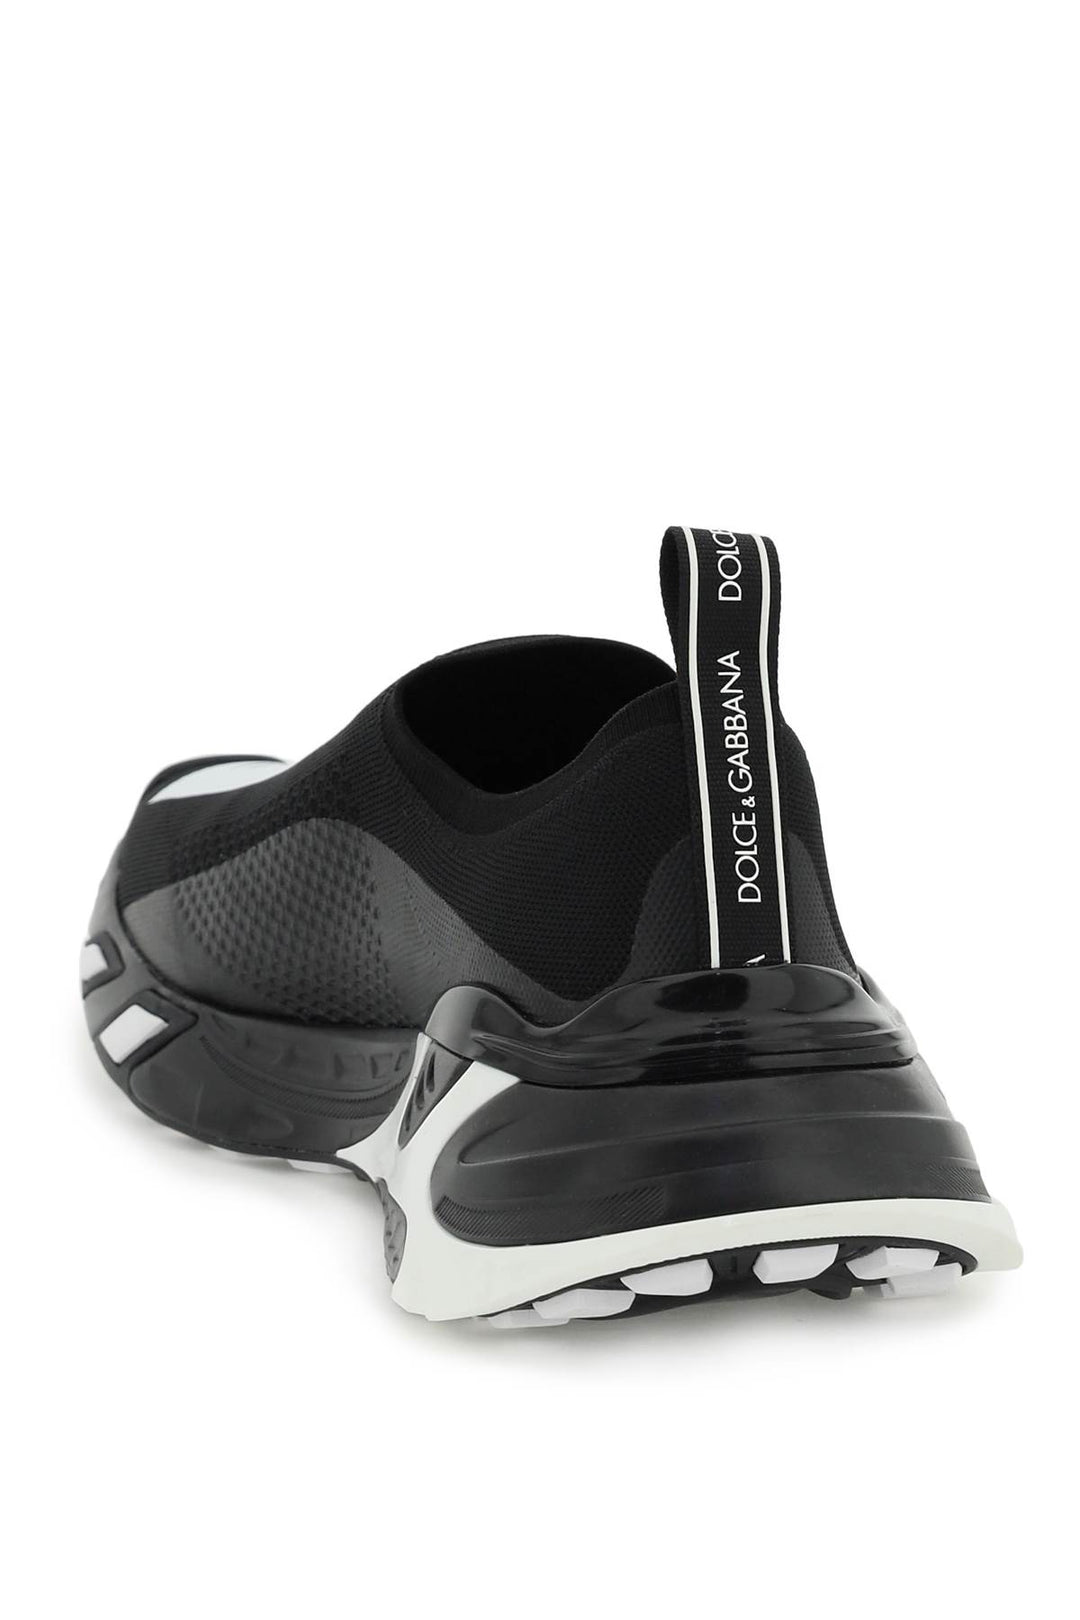 Sneakers Sorrento - Dolce & Gabbana - Uomo